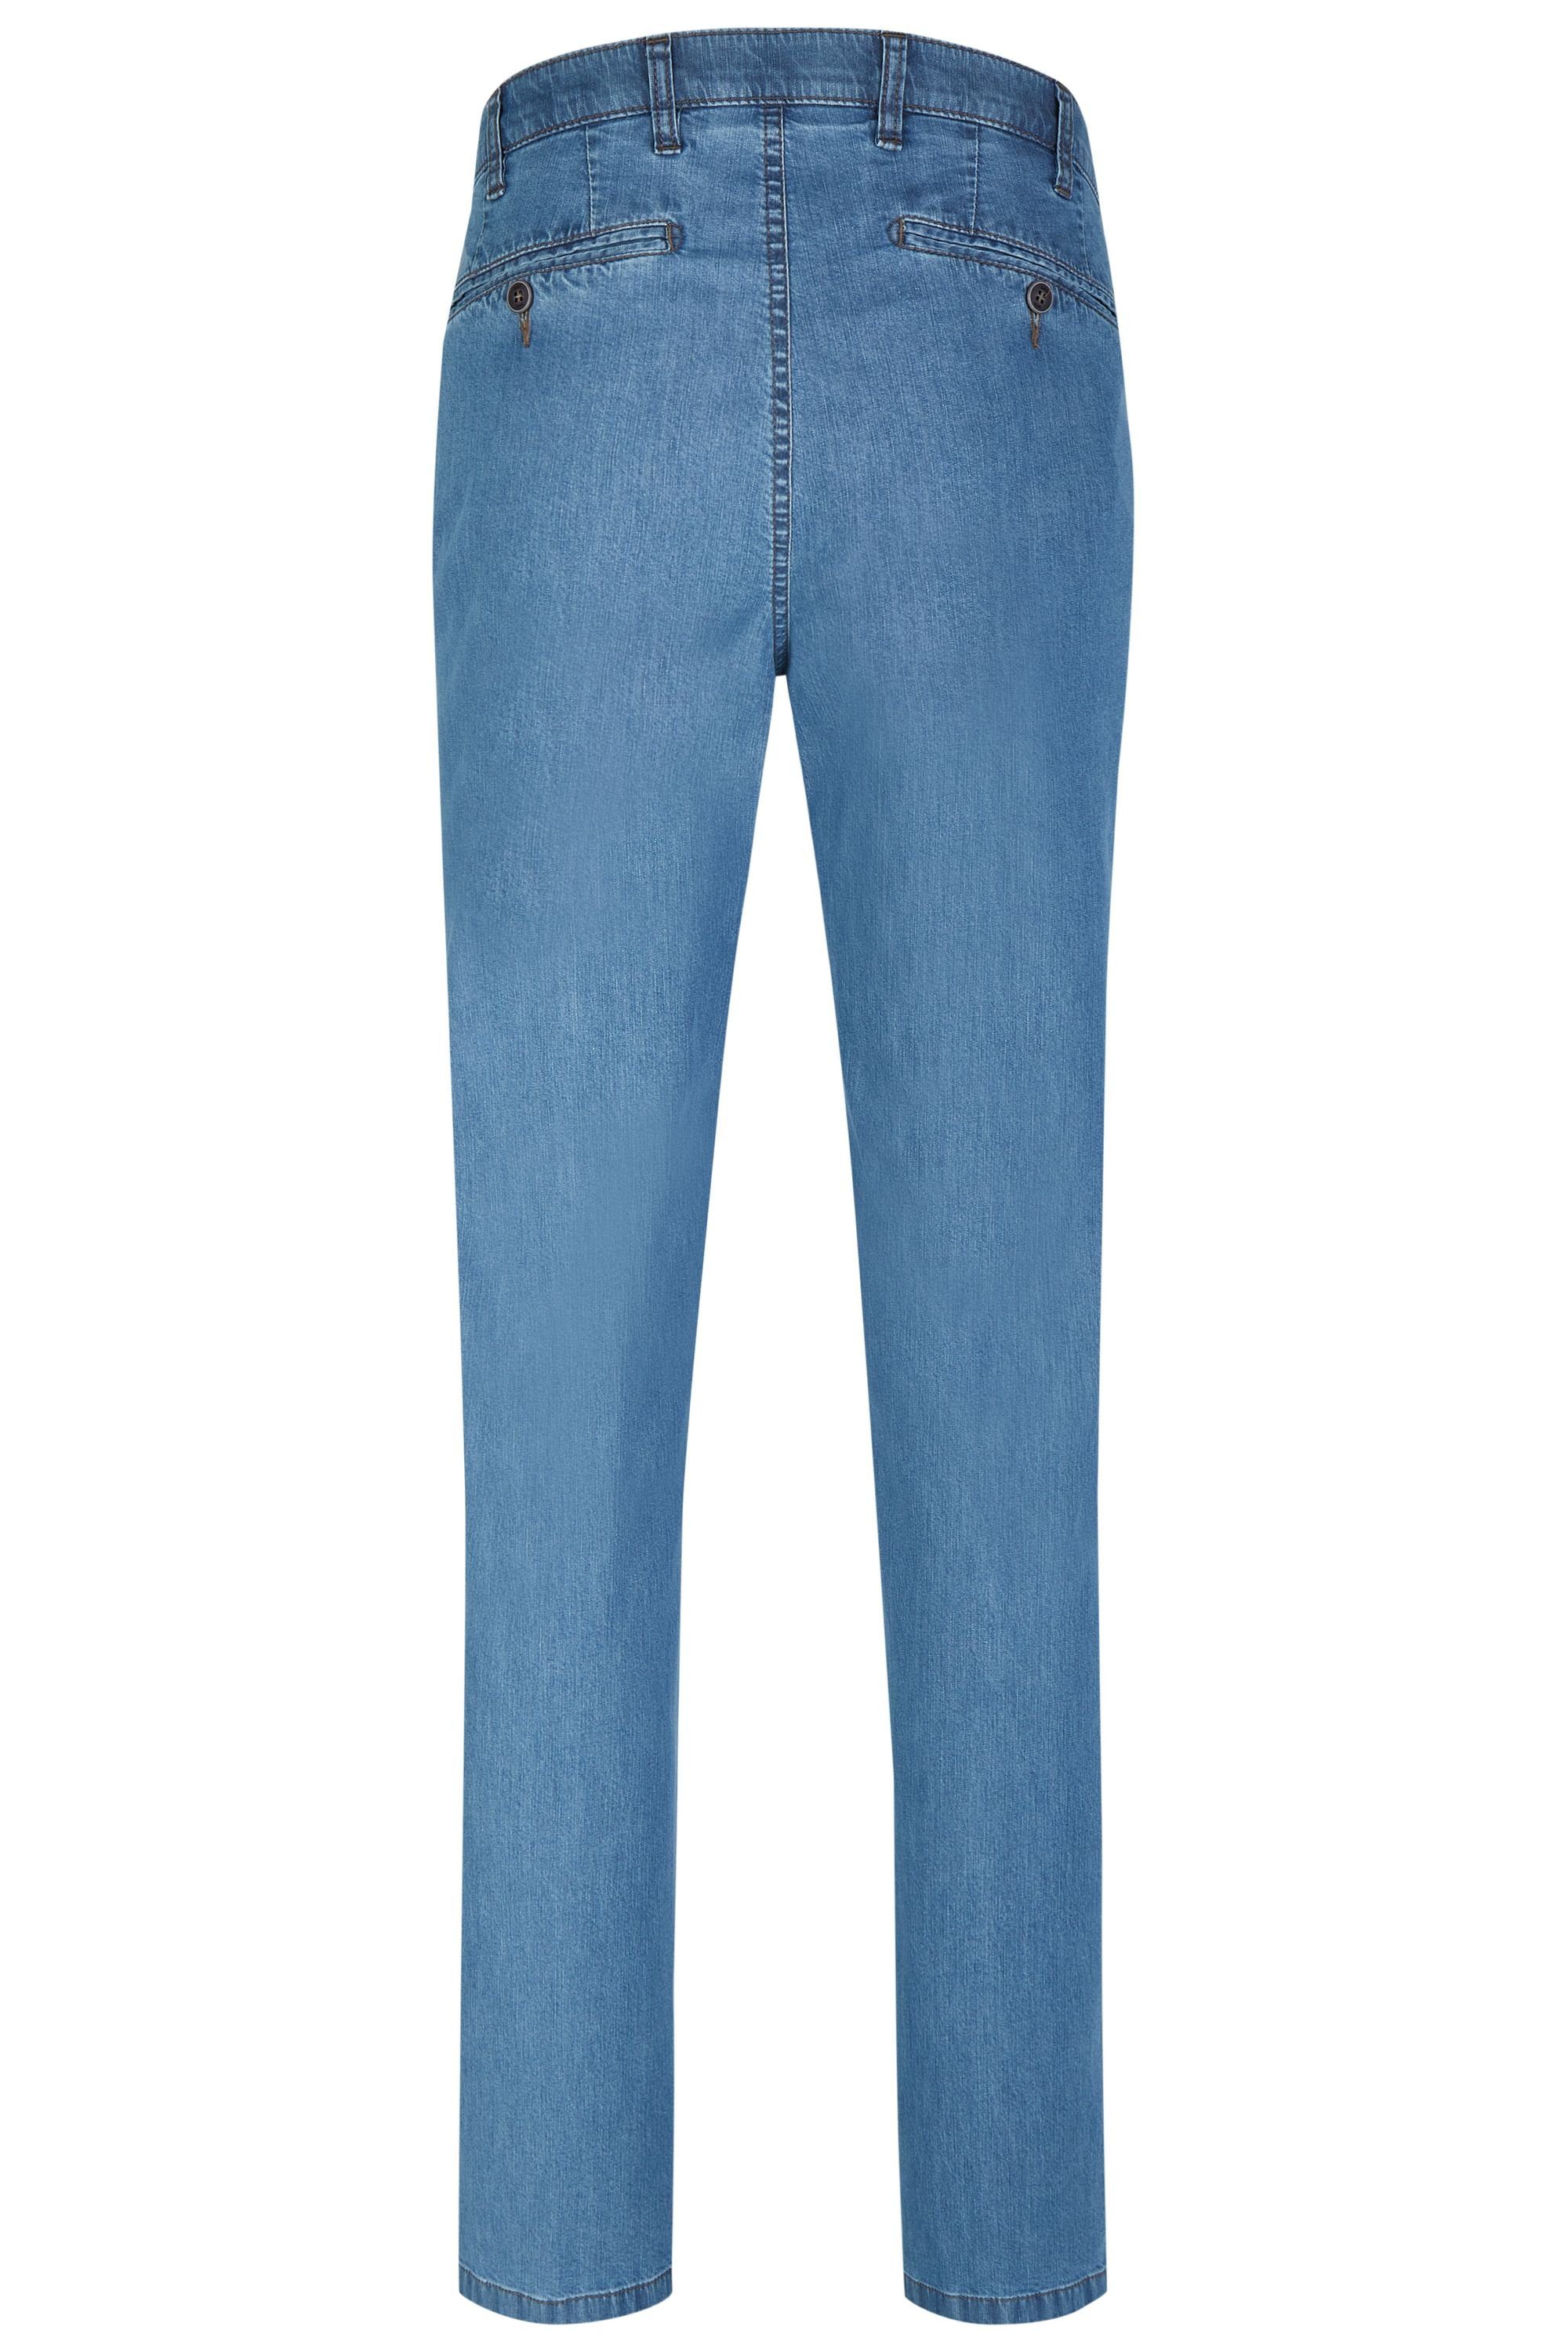 bleached (43) Sommer Herren Jeans 526 Stretch Flex Hose aus Fit aubi: High Jeans aubi Modell Bequeme Perfect Baumwolle